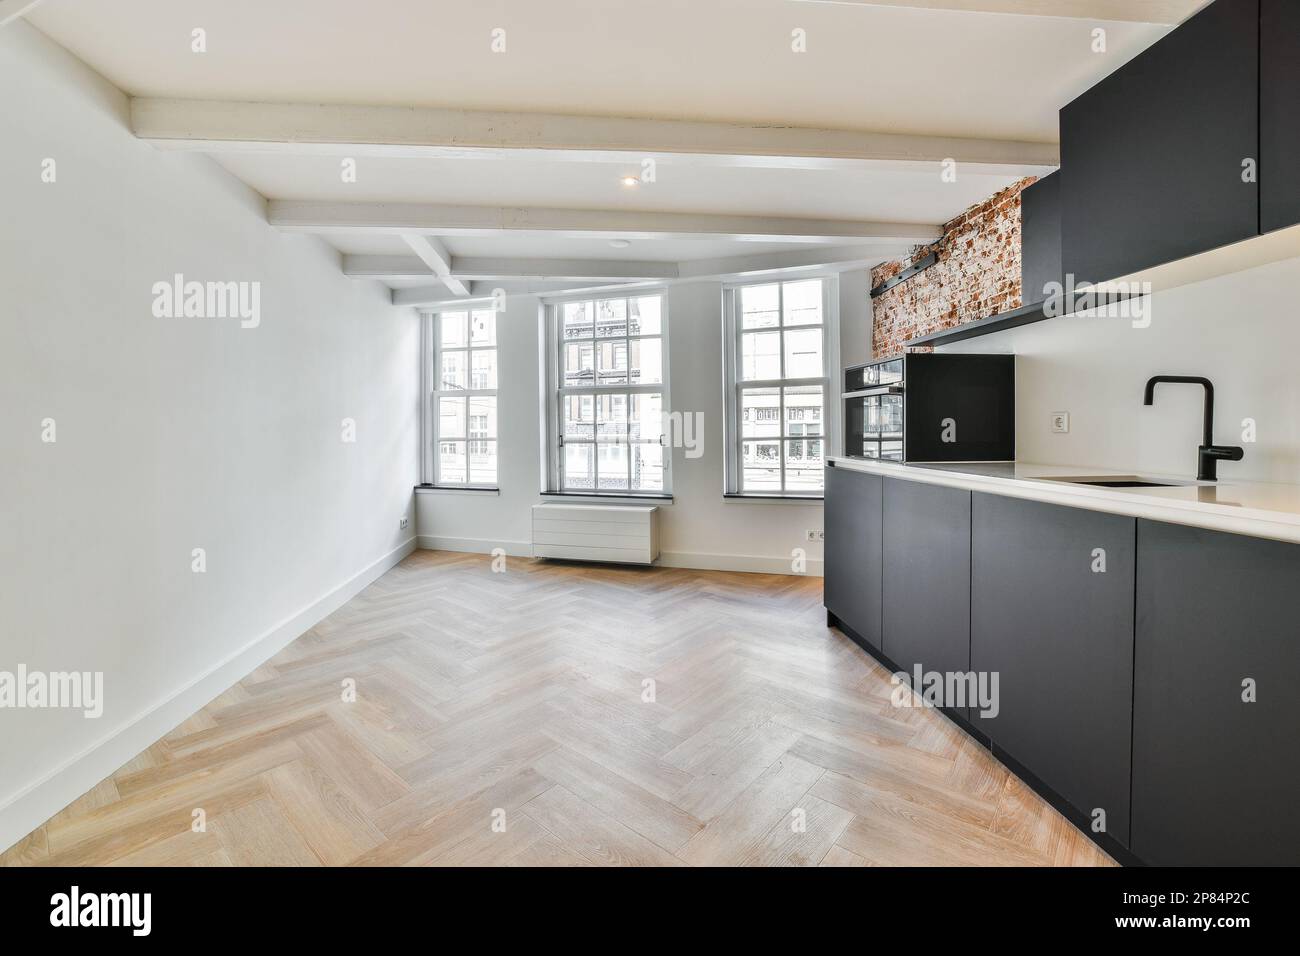 una cucina vuota con pavimento in legno e pareti bianche in una stanza che ha pavimenti in legno duro, armadi neri e grandi finestre Foto Stock